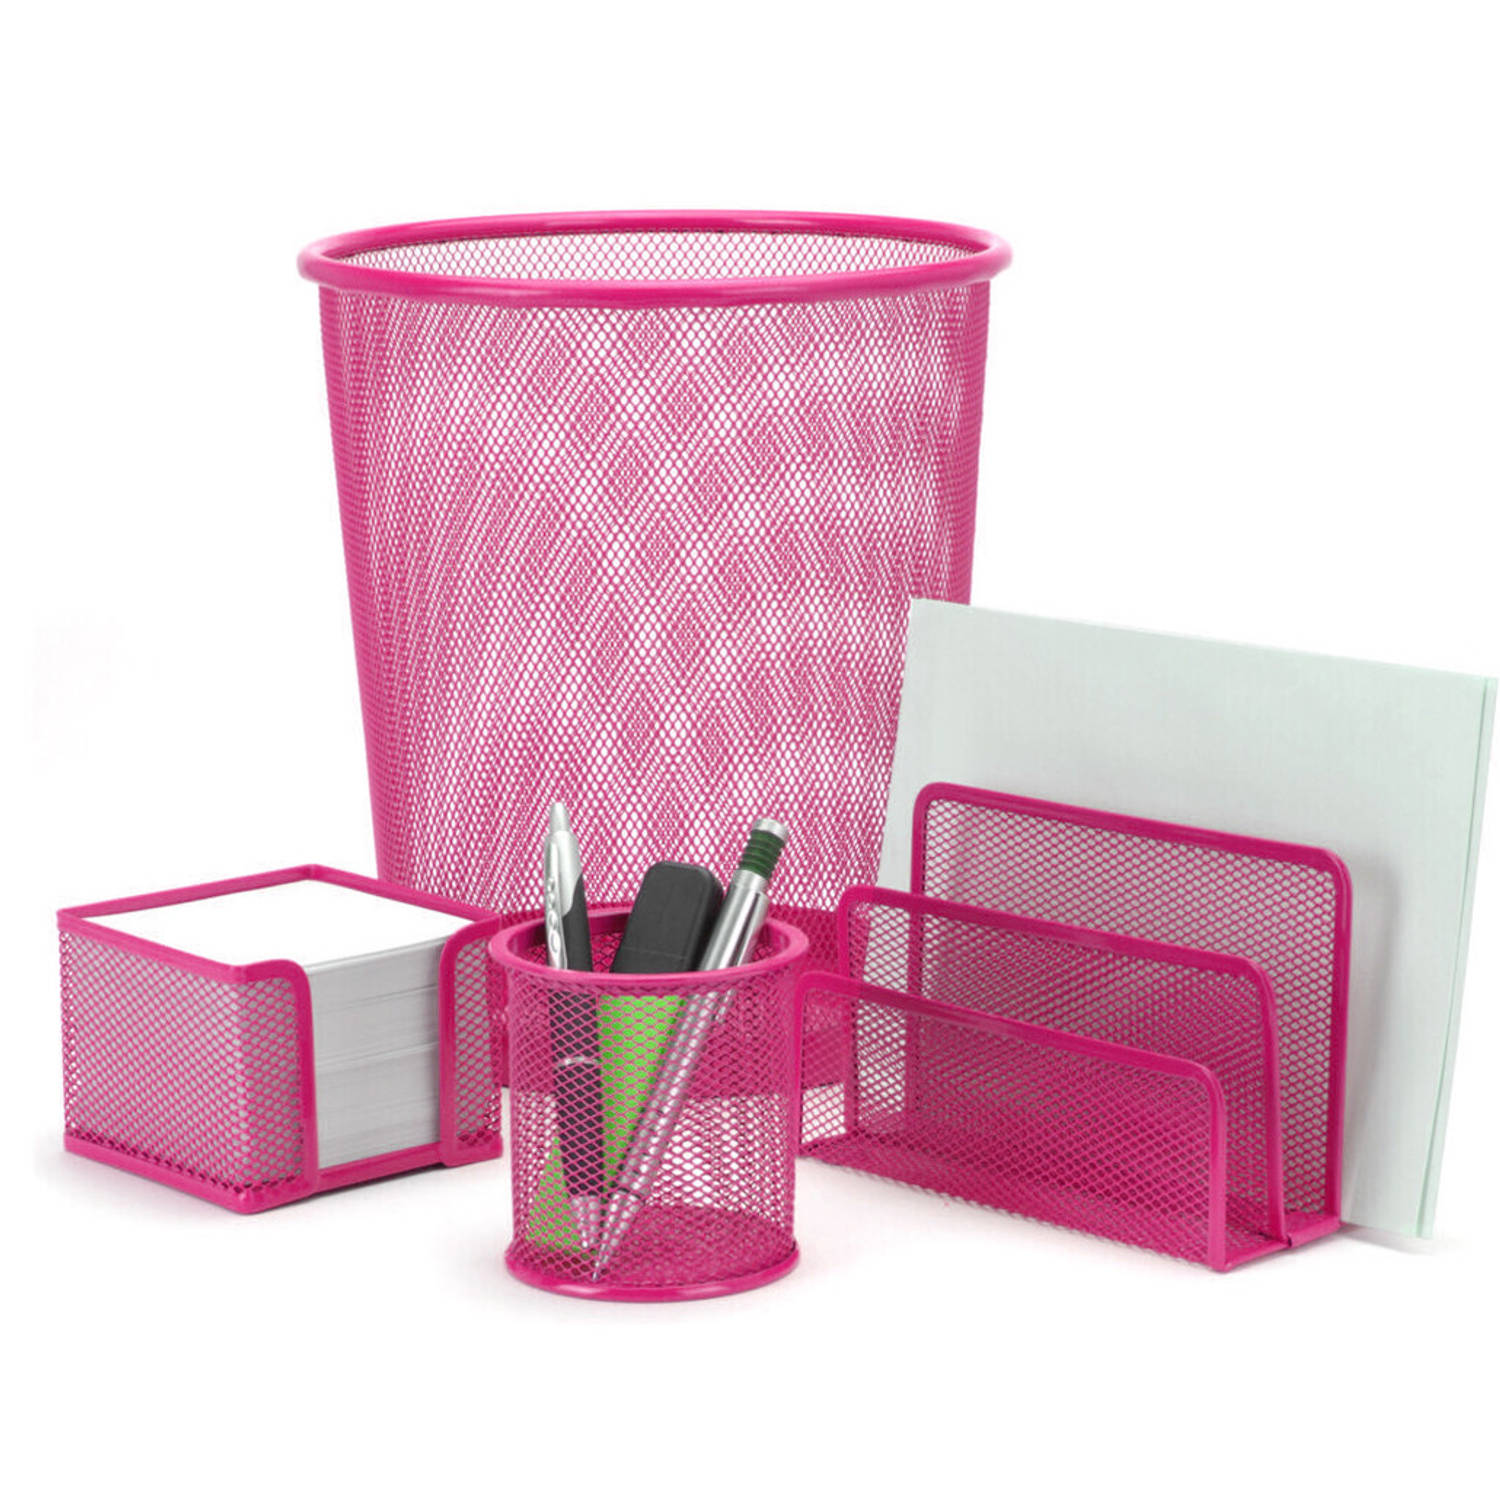 Kapper Van God Revolutionair Bureauset roze van metaal met prullenbak en pennenbakje - Hobbypakket |  Blokker